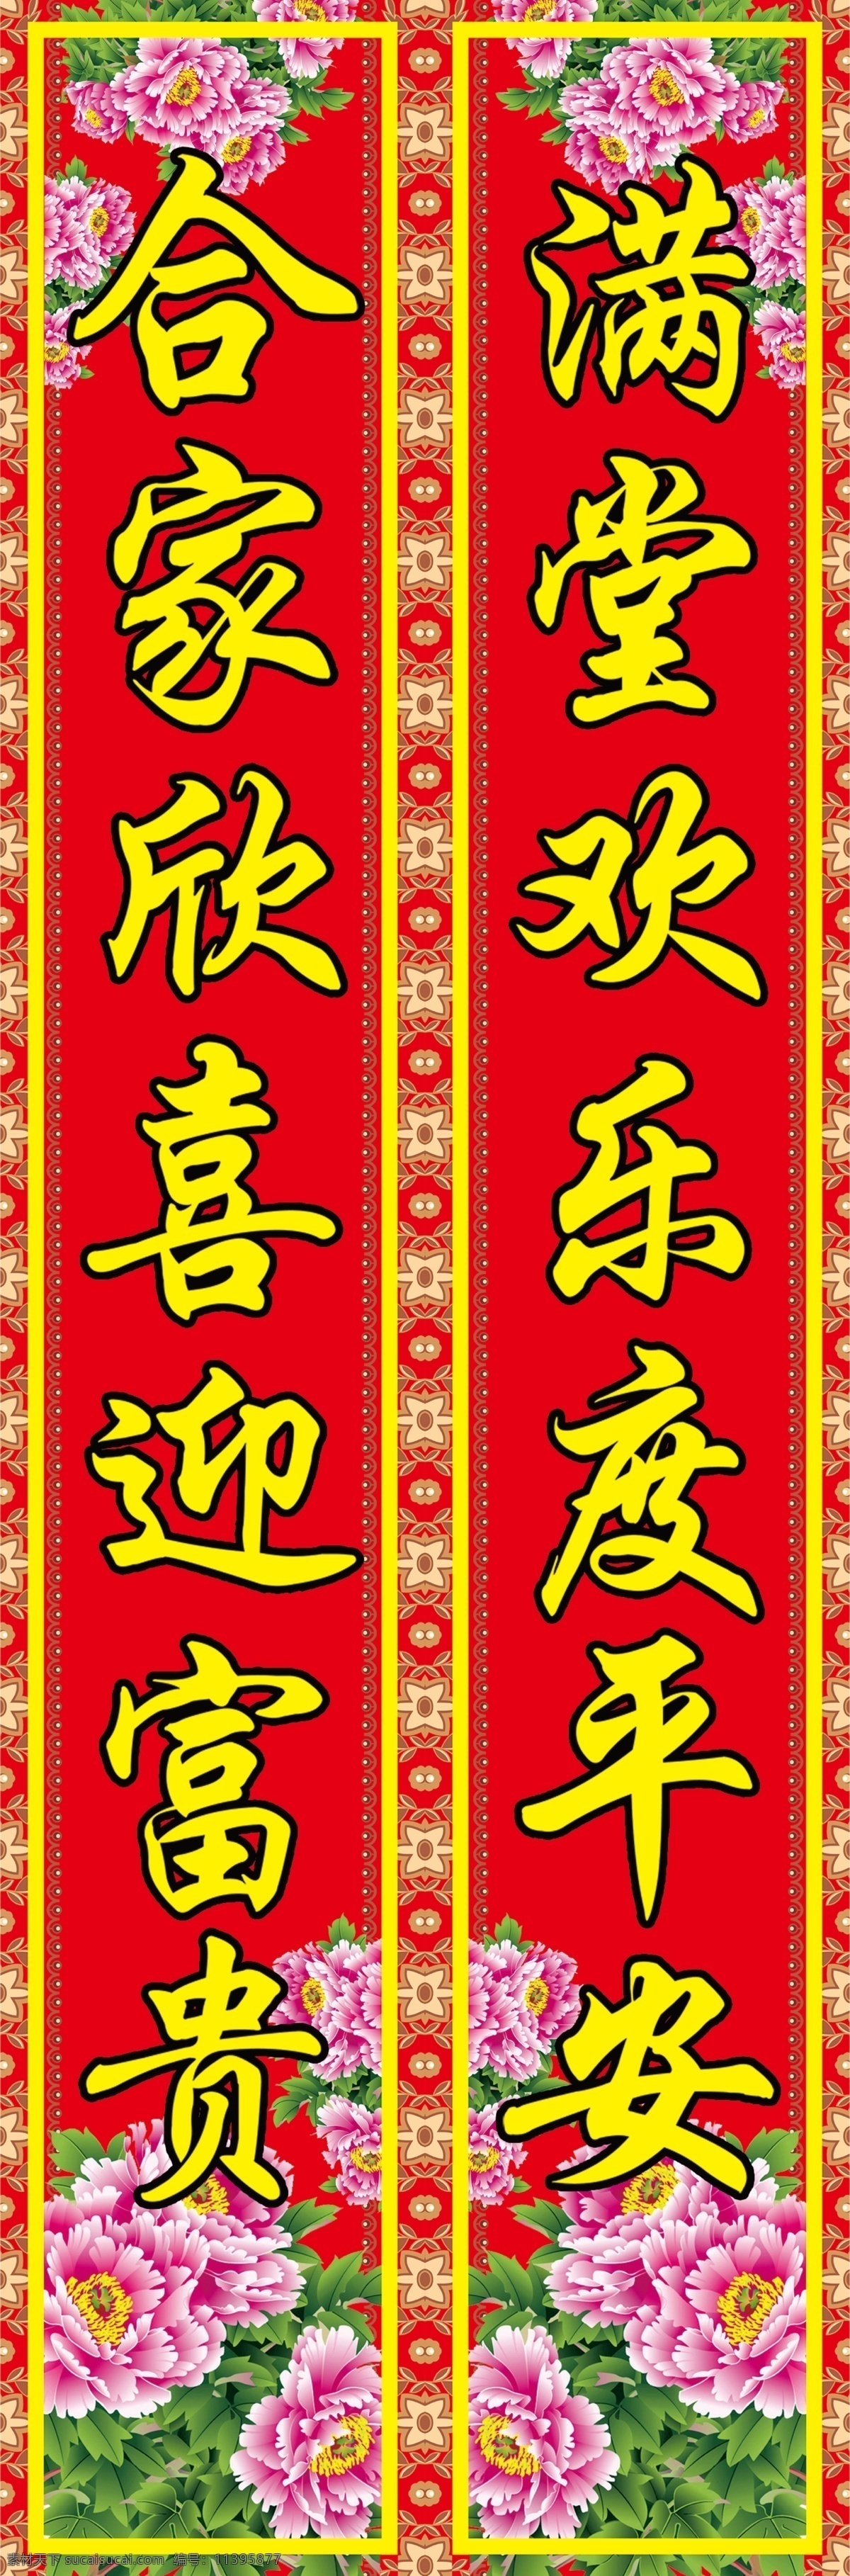 牡丹花 对联 传统文化 福字 过年 红色 花纹 家文化 牡丹 年画 年货 幸福 喜庆 挥春 利是钱 年文化 原创设计 其他原创设计